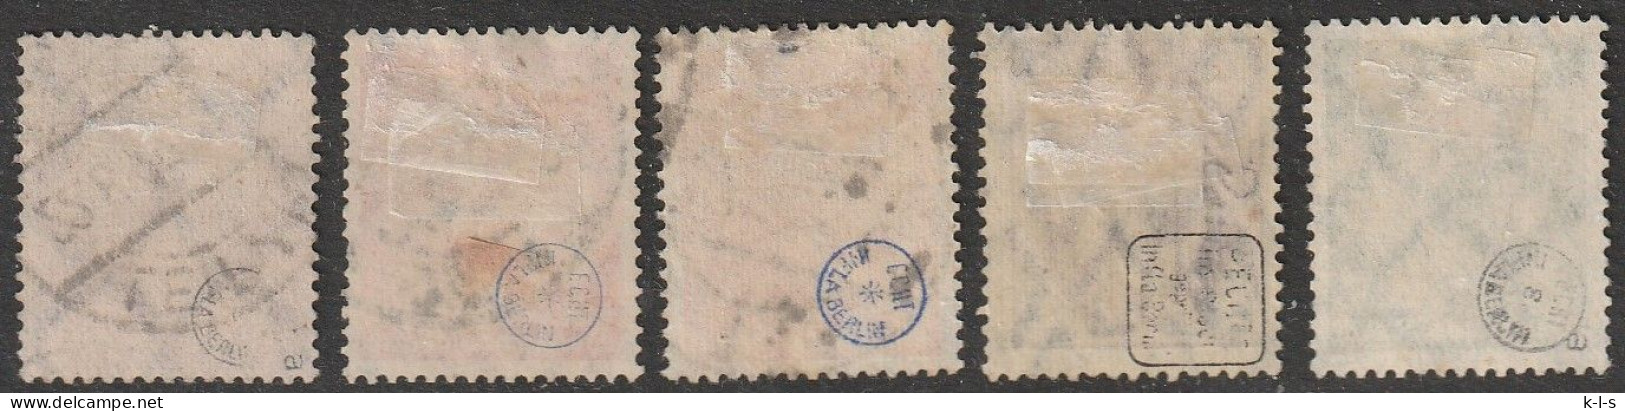 Deut. Reich: 1921/22, 5 Versch. Infla- Marken, Mi. Nr. 166, 169, 171, 187, 197, Alle Geprüft INFLA BERLIN.  Gestpl./used - Used Stamps